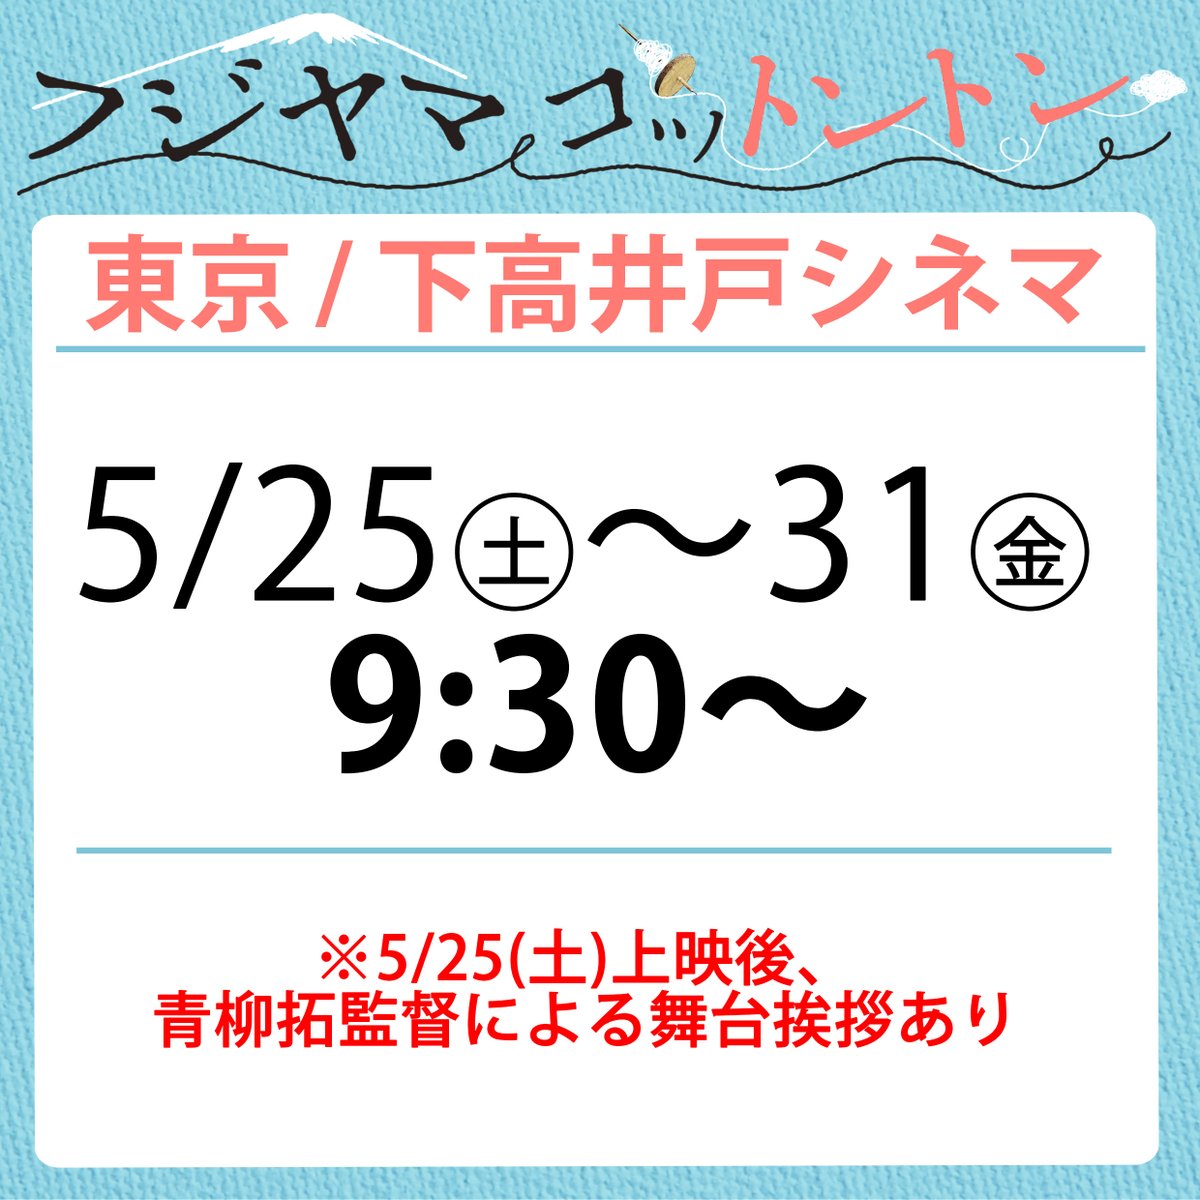 【5/25㊏～東京・下高井戸】 『フジヤマコットントン』東京・下高井戸シネマでは5月25日㊏より上映開始！初日の25日㊏は青柳拓監督が舞台あいさつに伺わせて頂きます。東京近郊ではこれ以降上映の予定ありませんので、どうぞお見逃しなく！